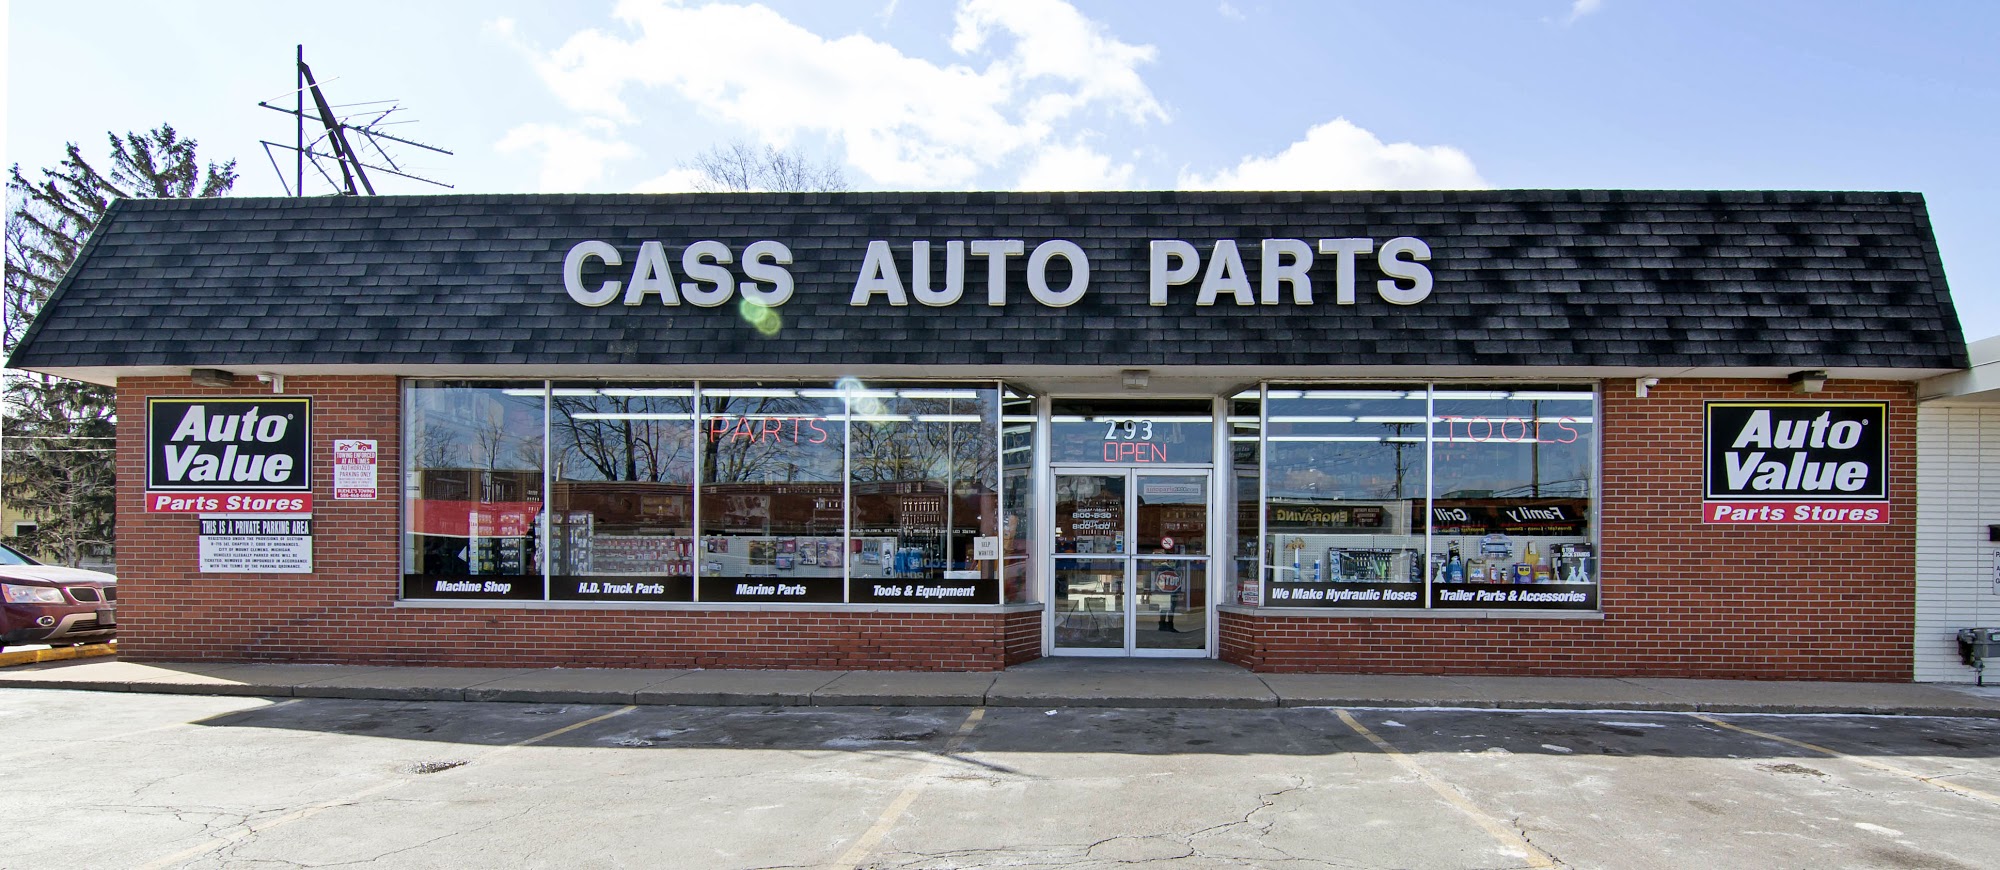 Cass Auto Parts